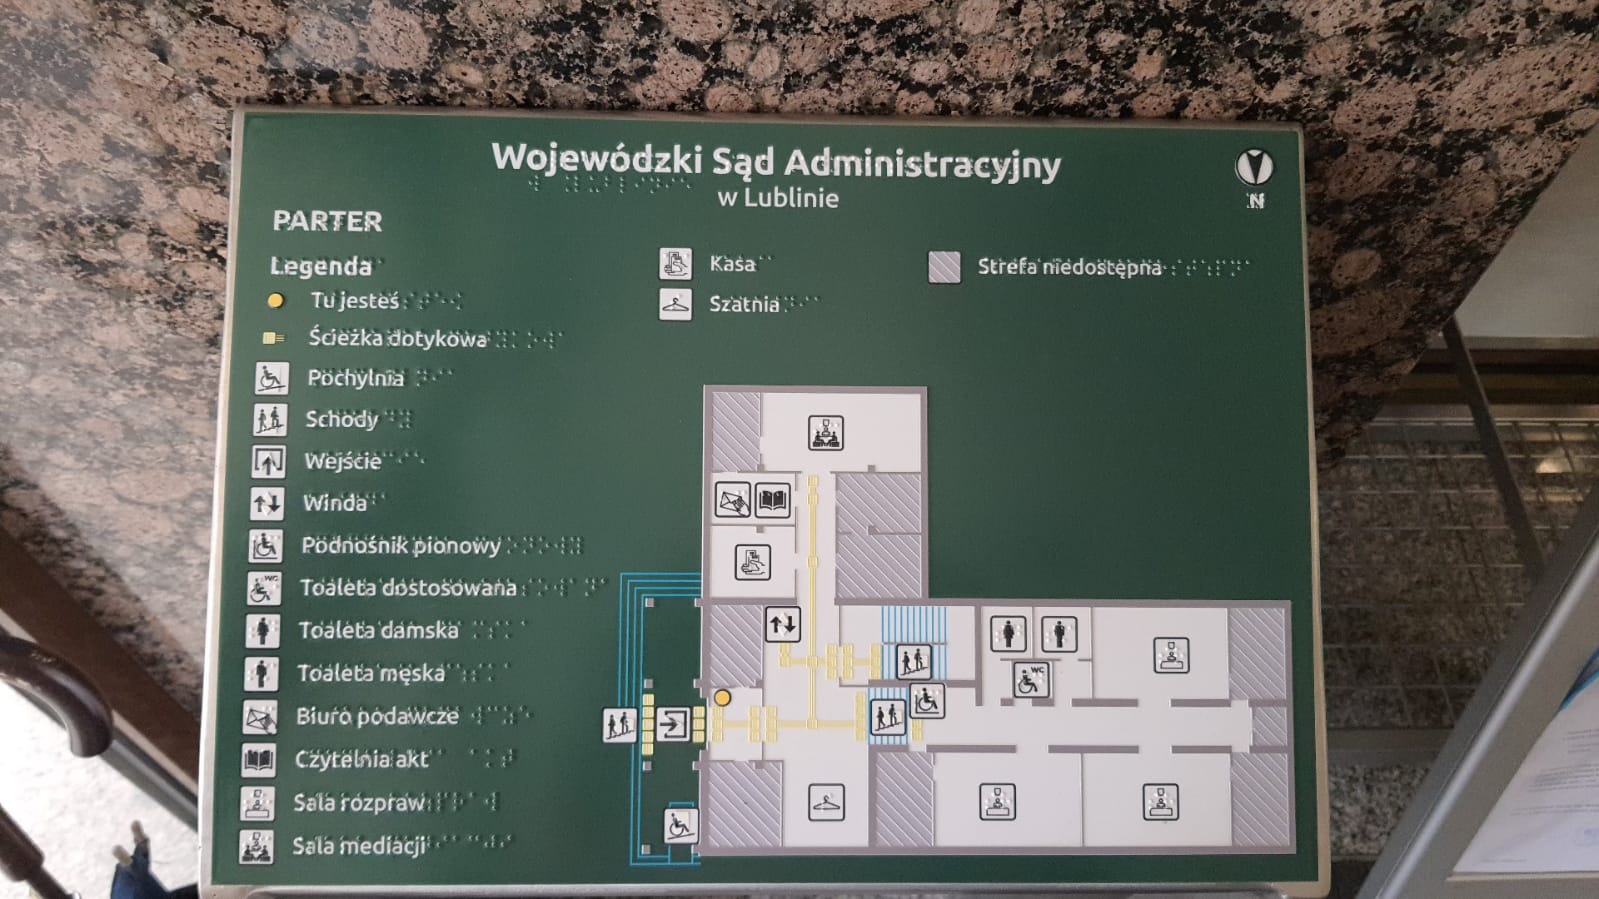 Wojewódzki Sąd Administracyjny w Lublinie